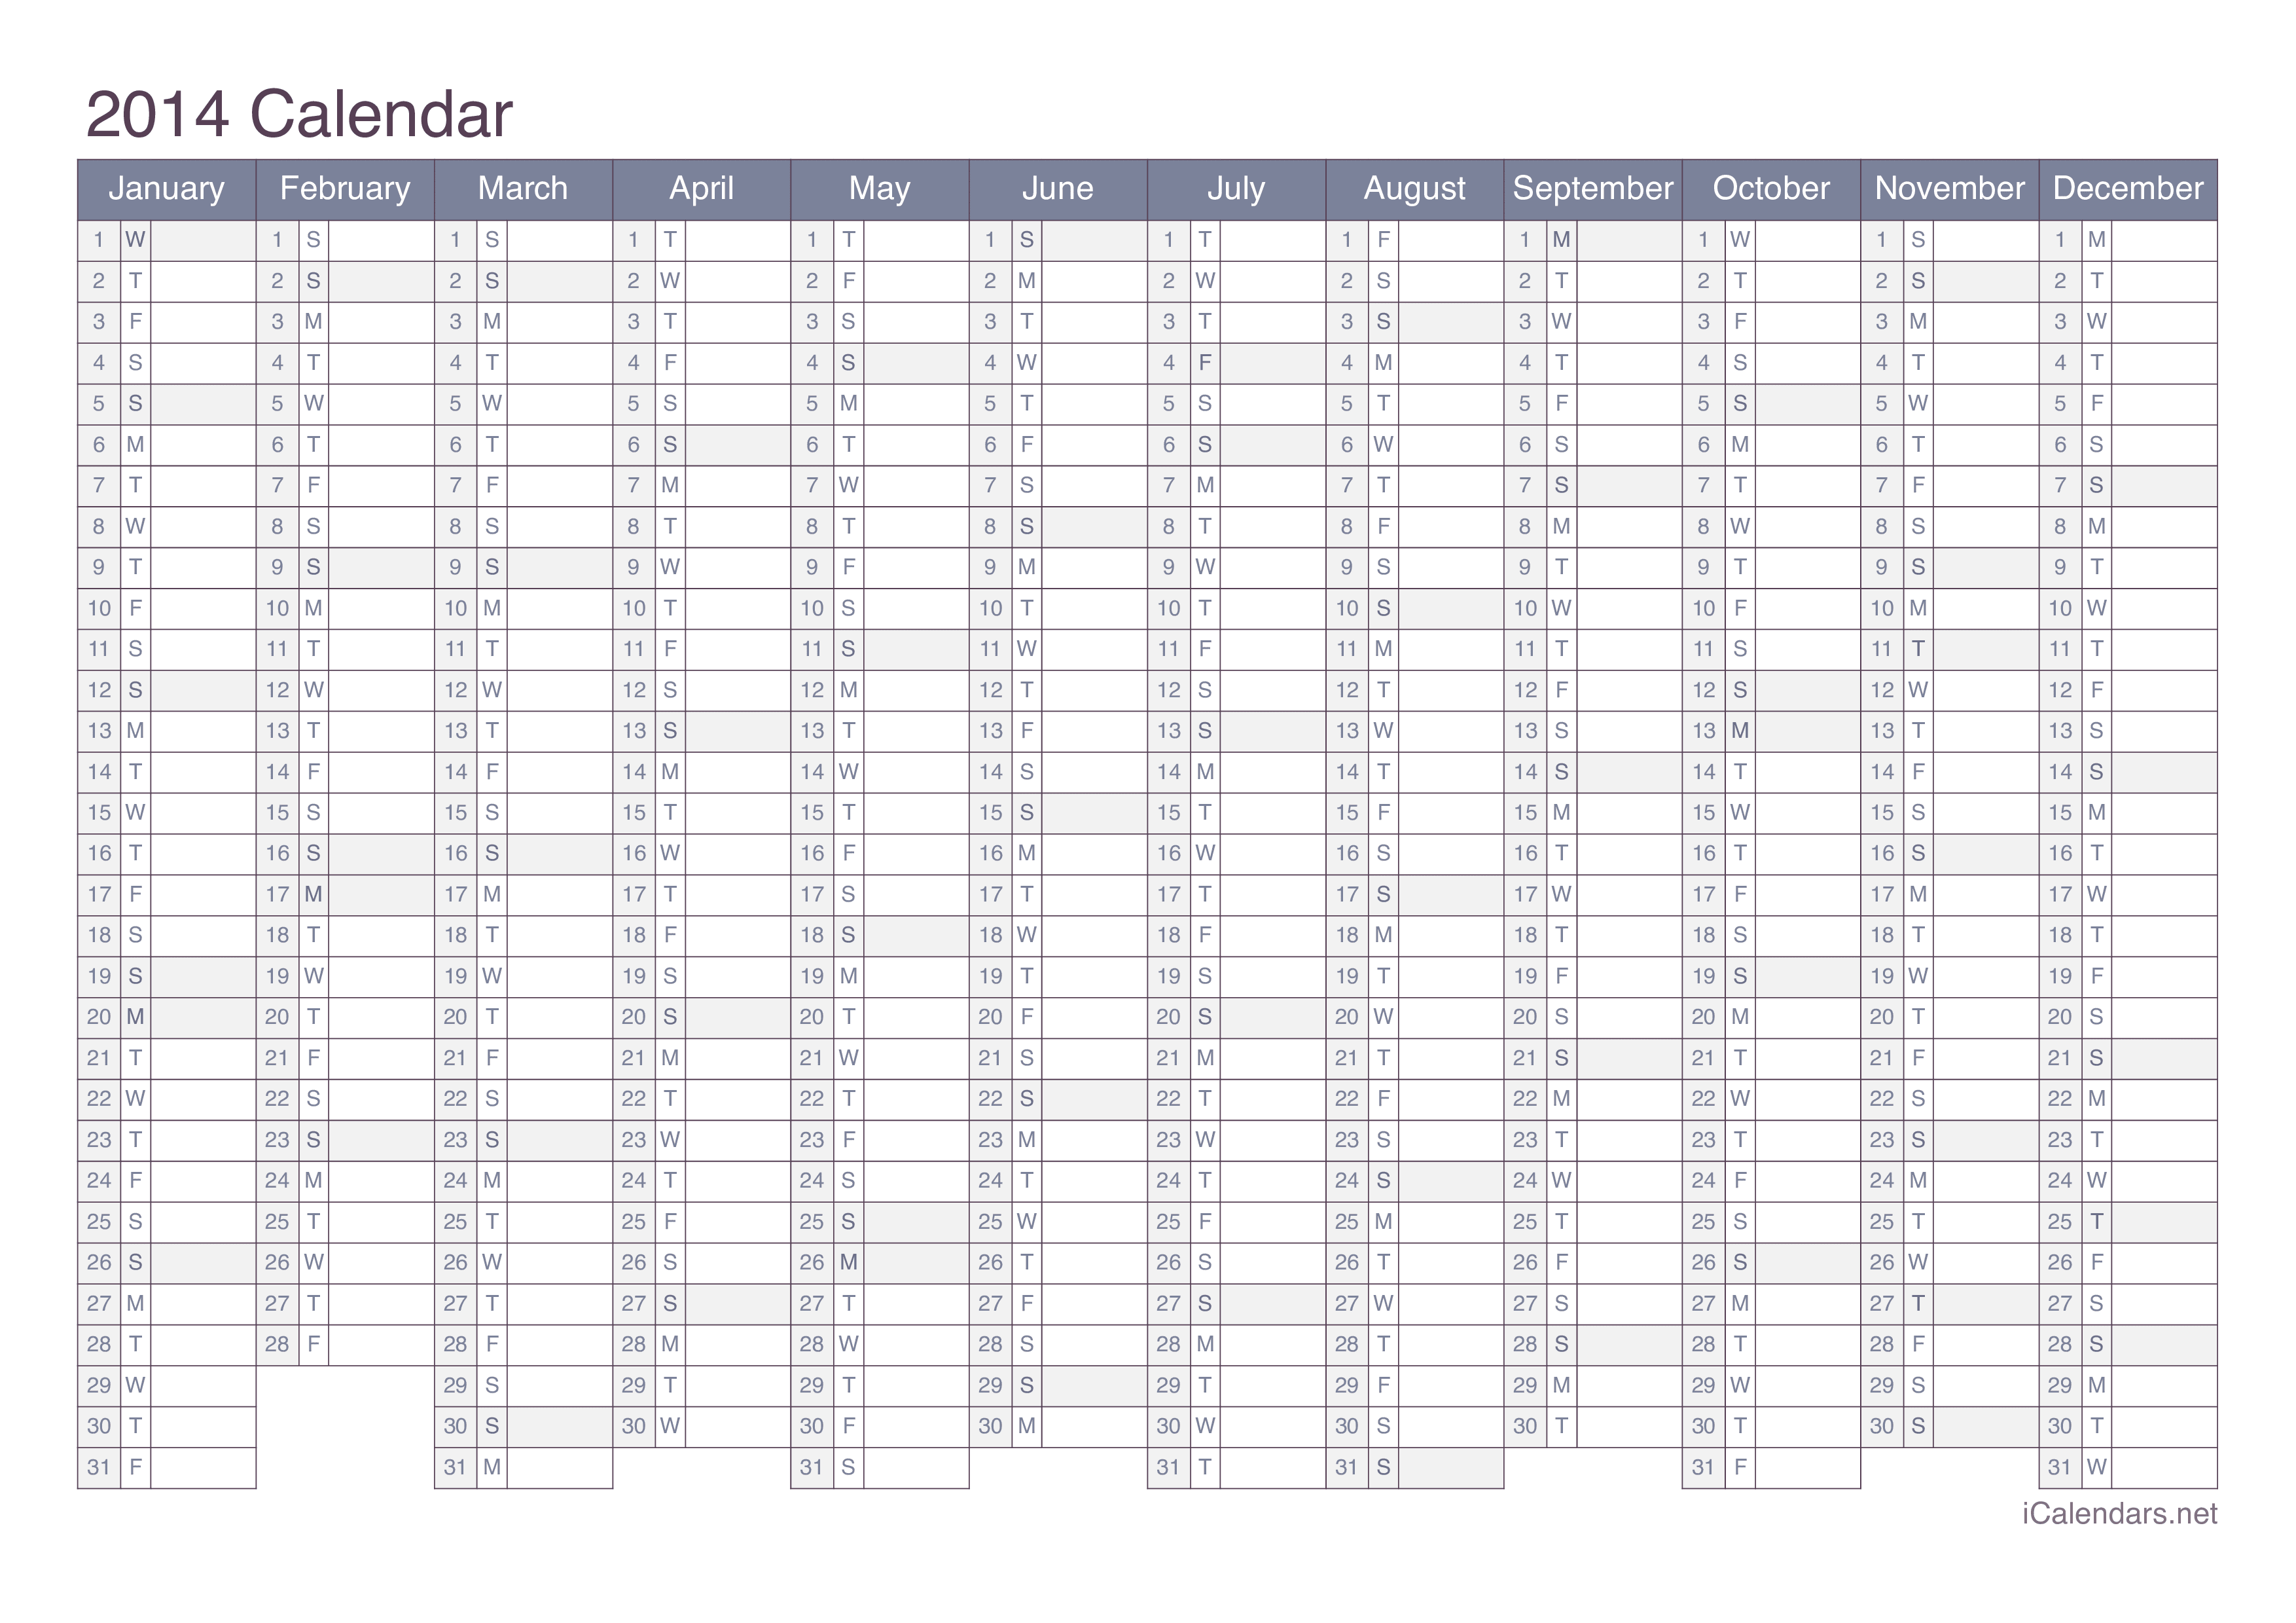 2014 Calendar - Office